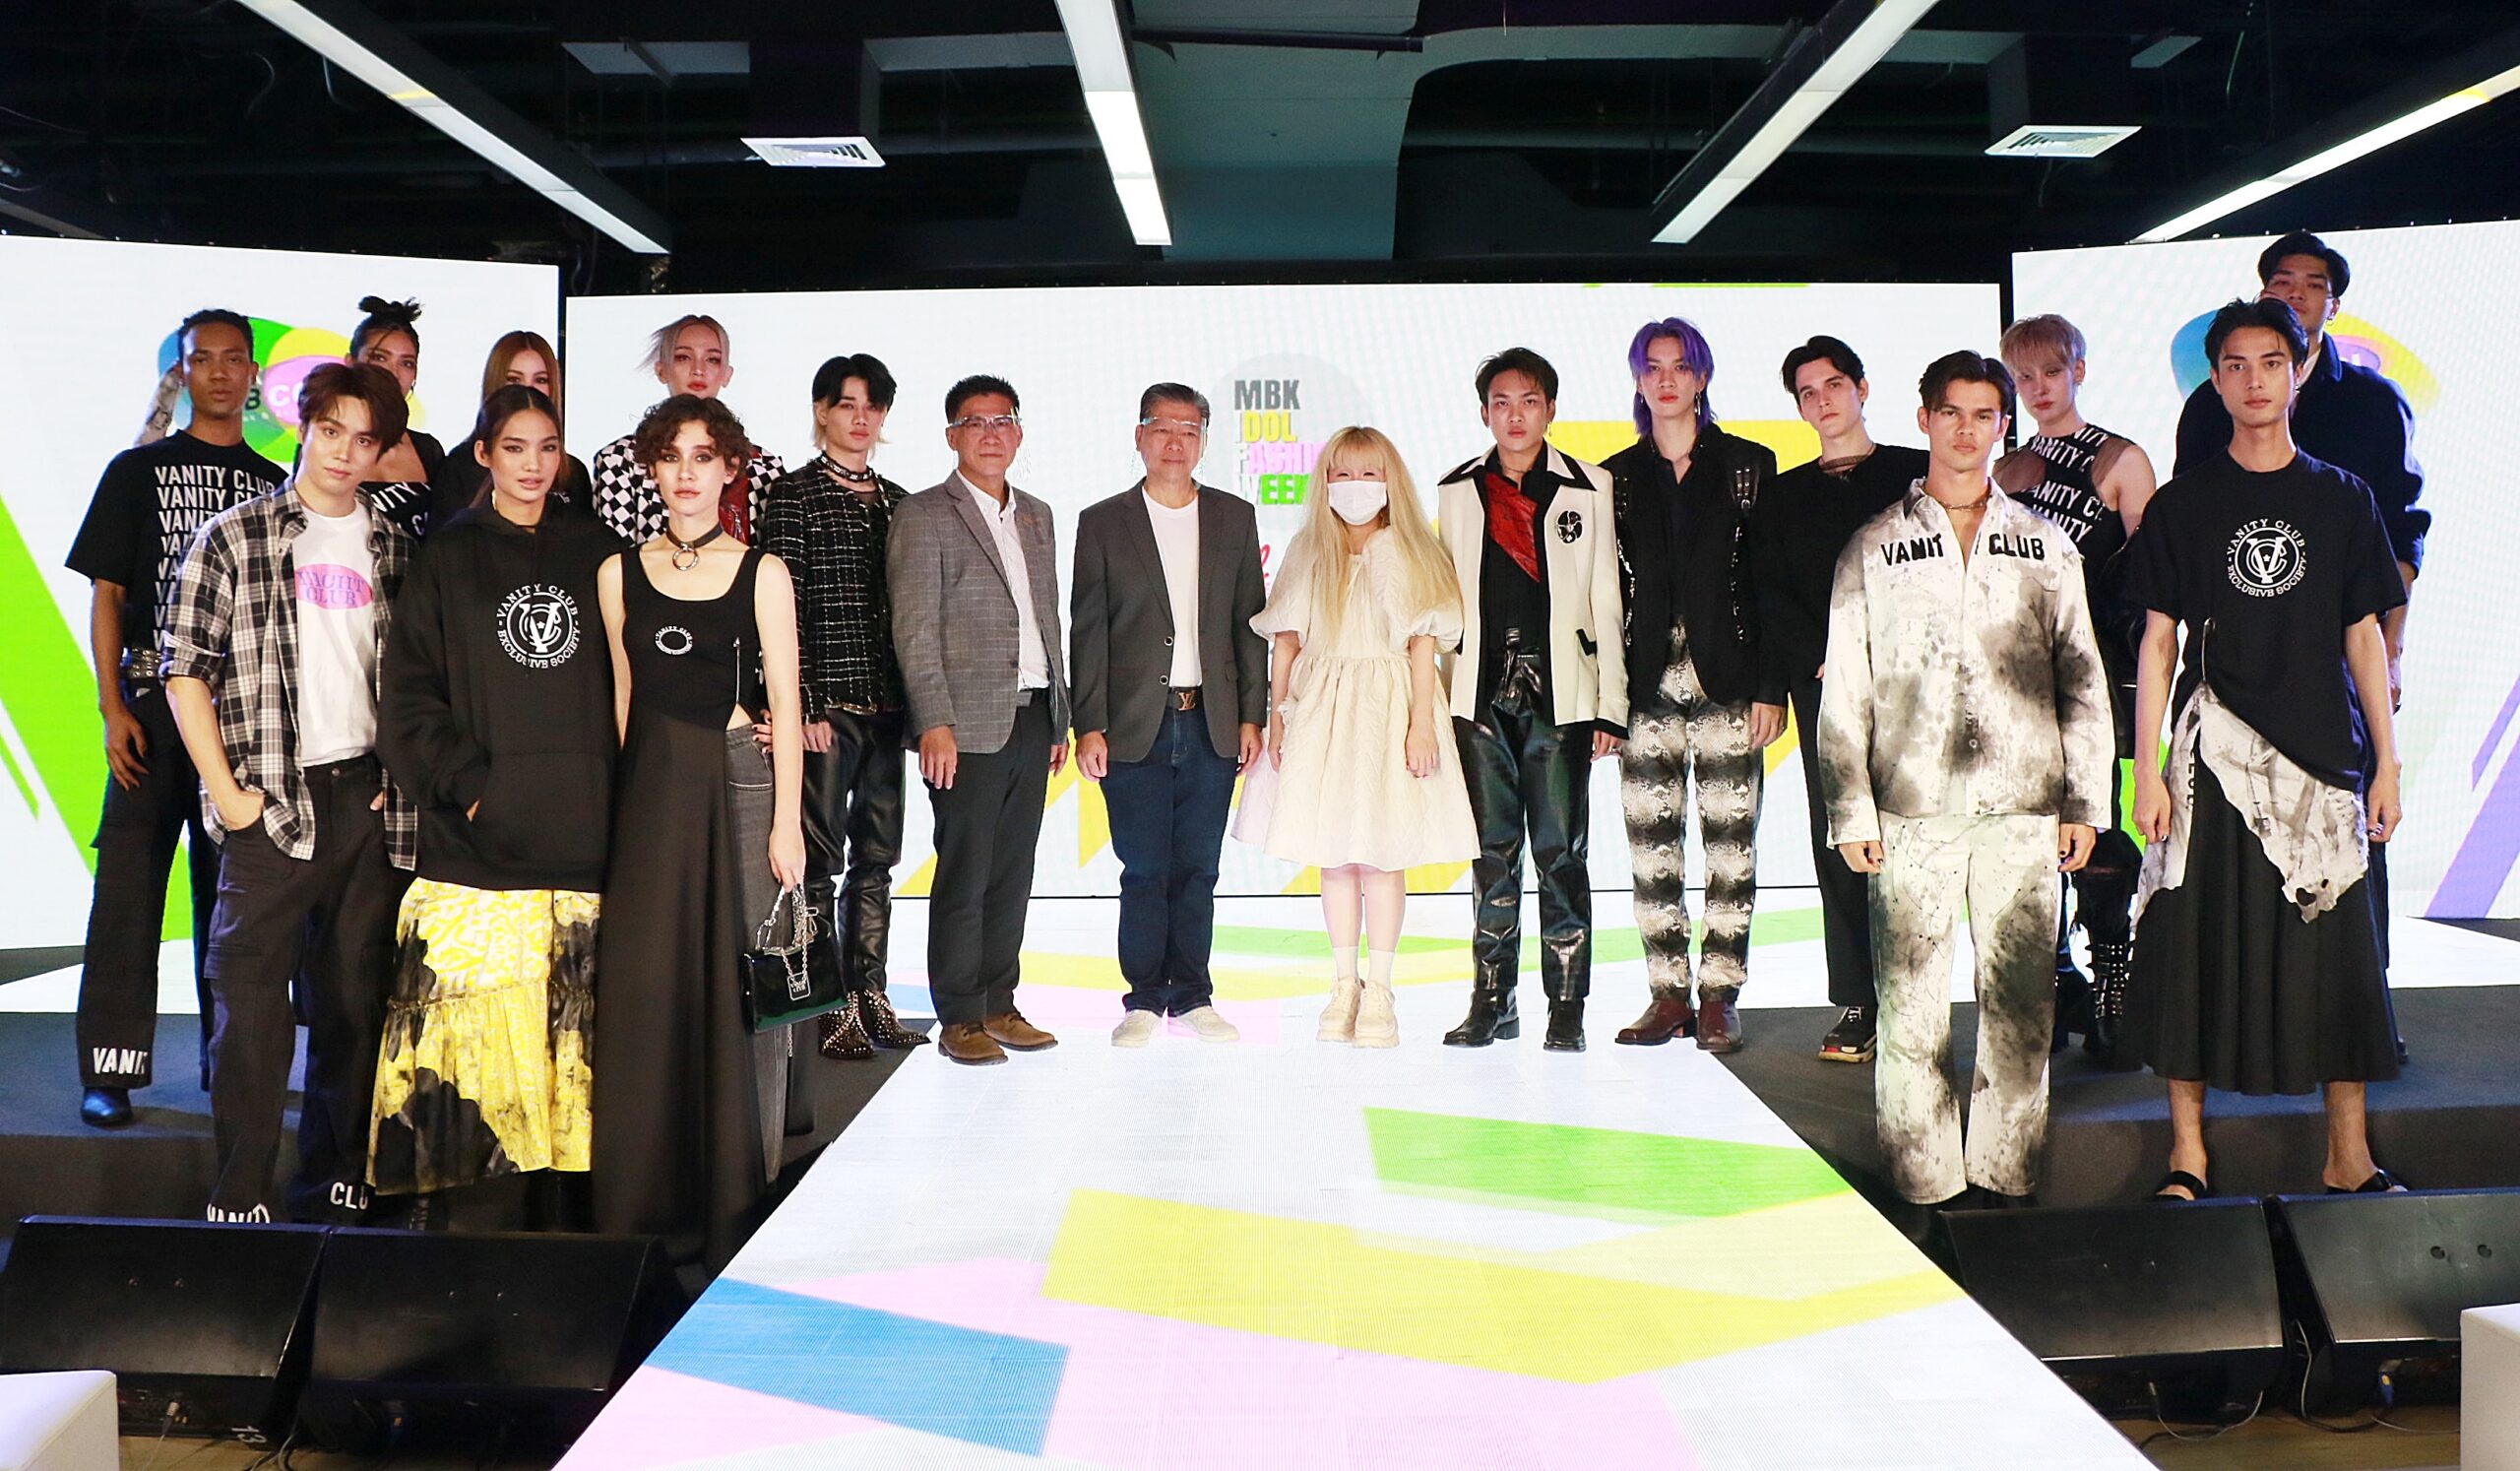 MBKセンターの新コンセプト「MBK MB COOL 」を祝うファッションショー